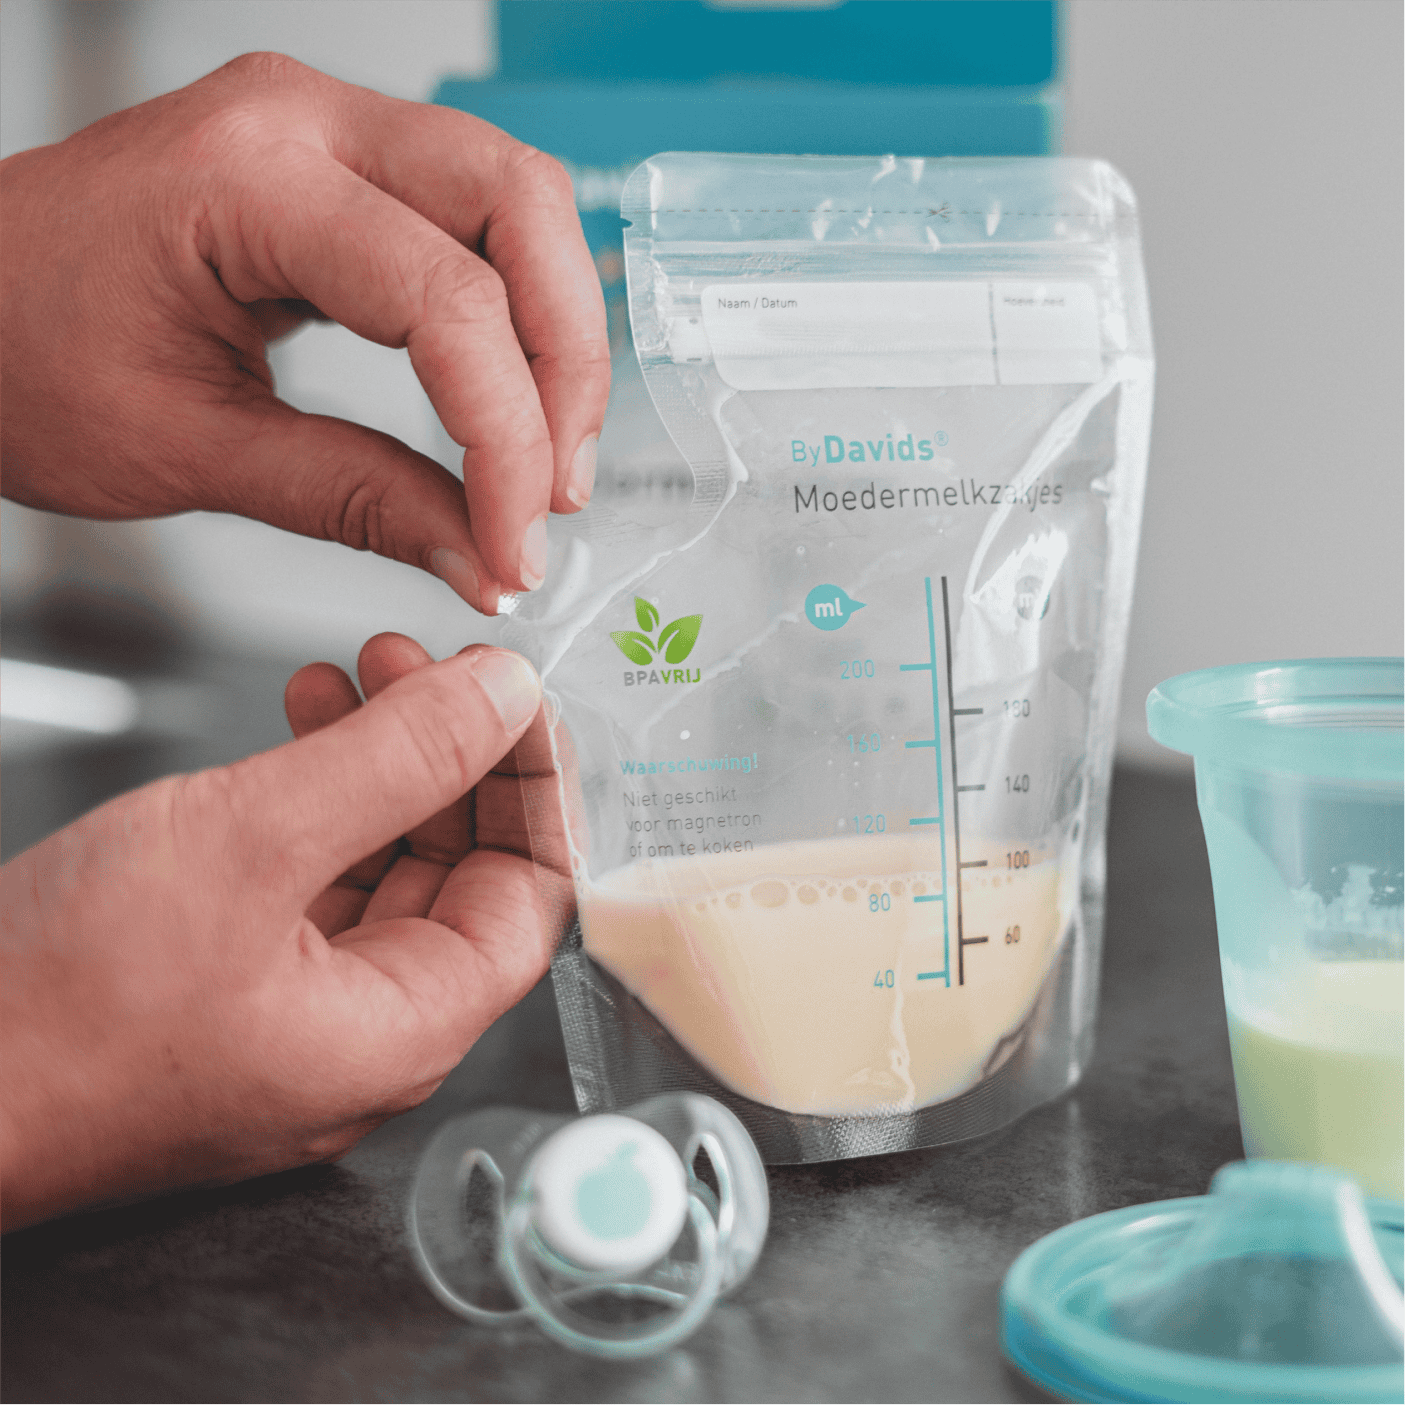 productfotografie-moedermelk